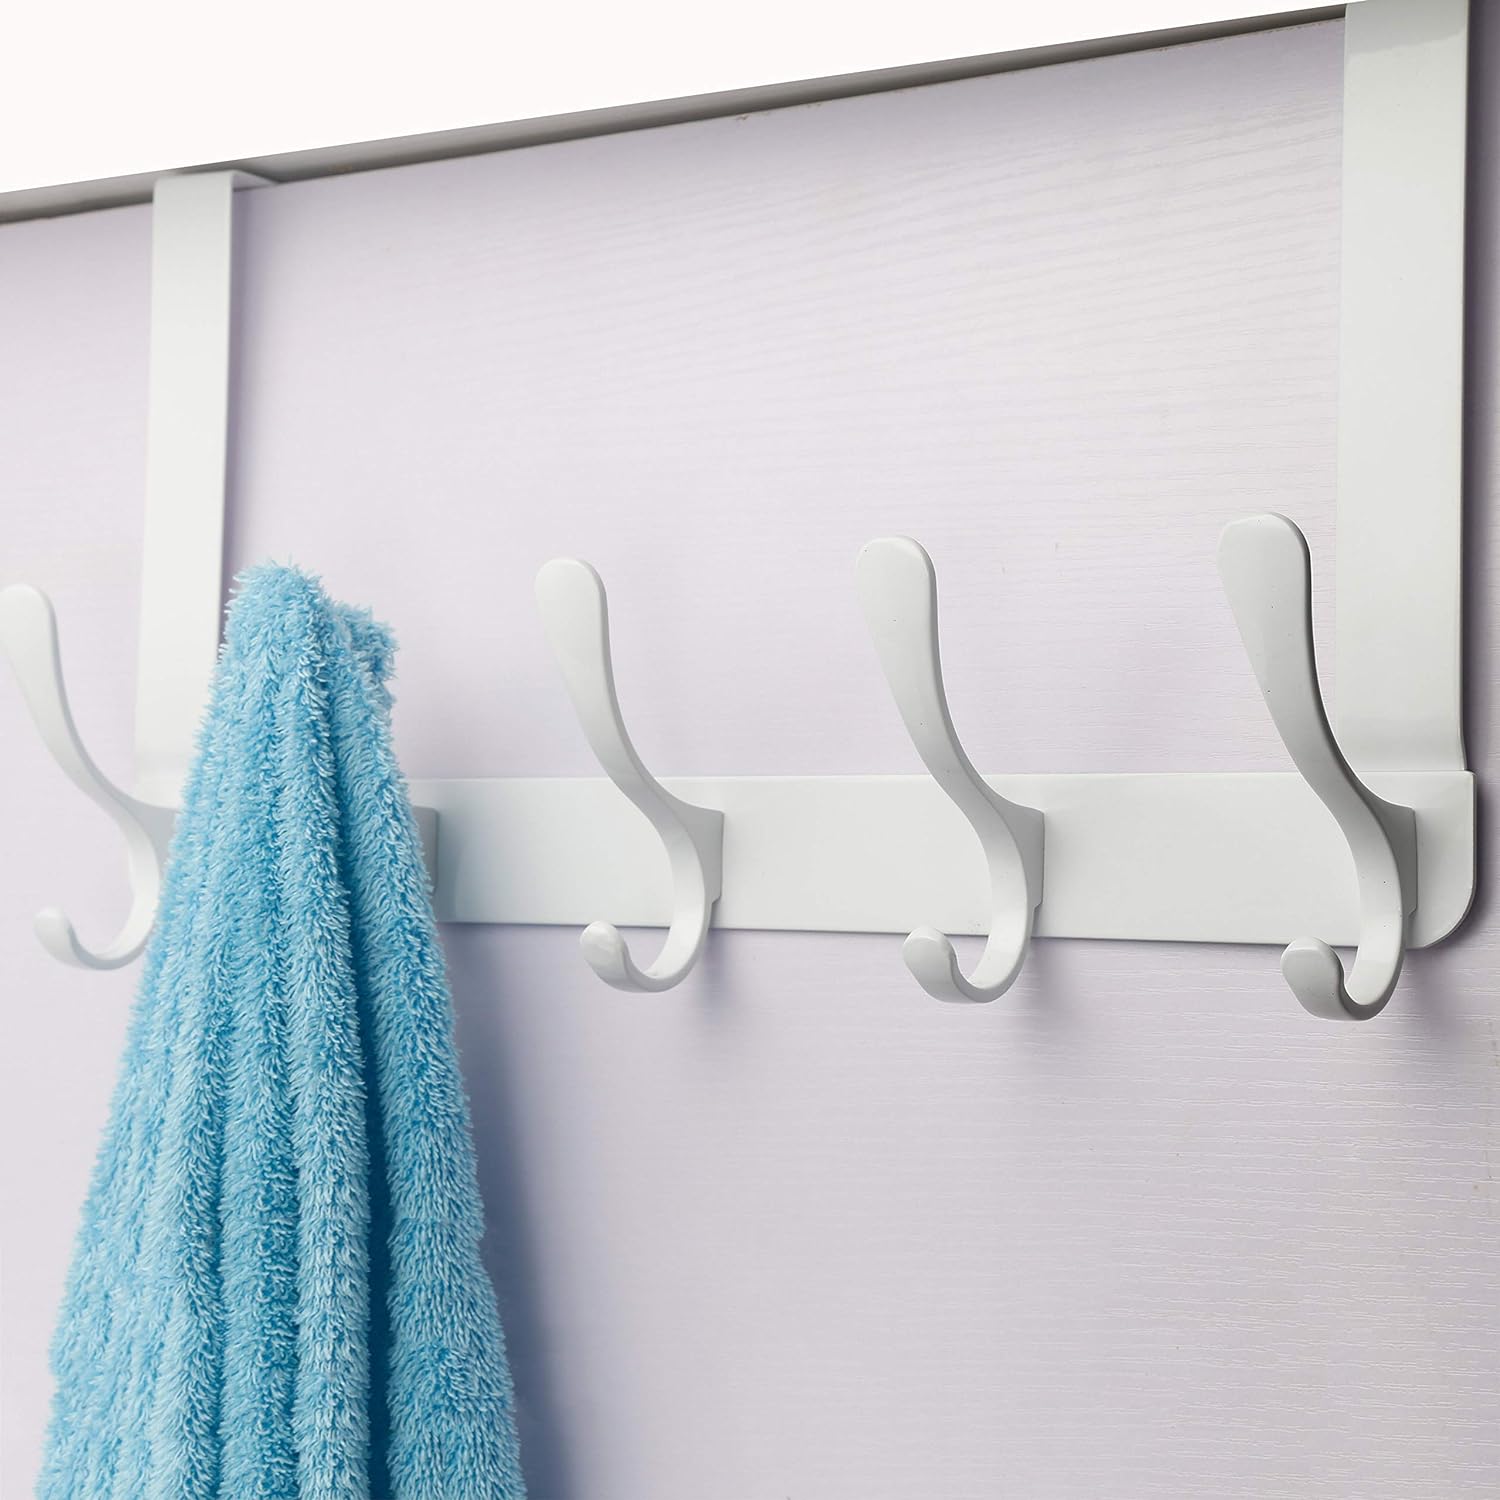 Skoloo Over The Door Hook Rack, 5 Door Hanger Hooks for Clothes Towels Coat, Over The Door Coat Rack (White)